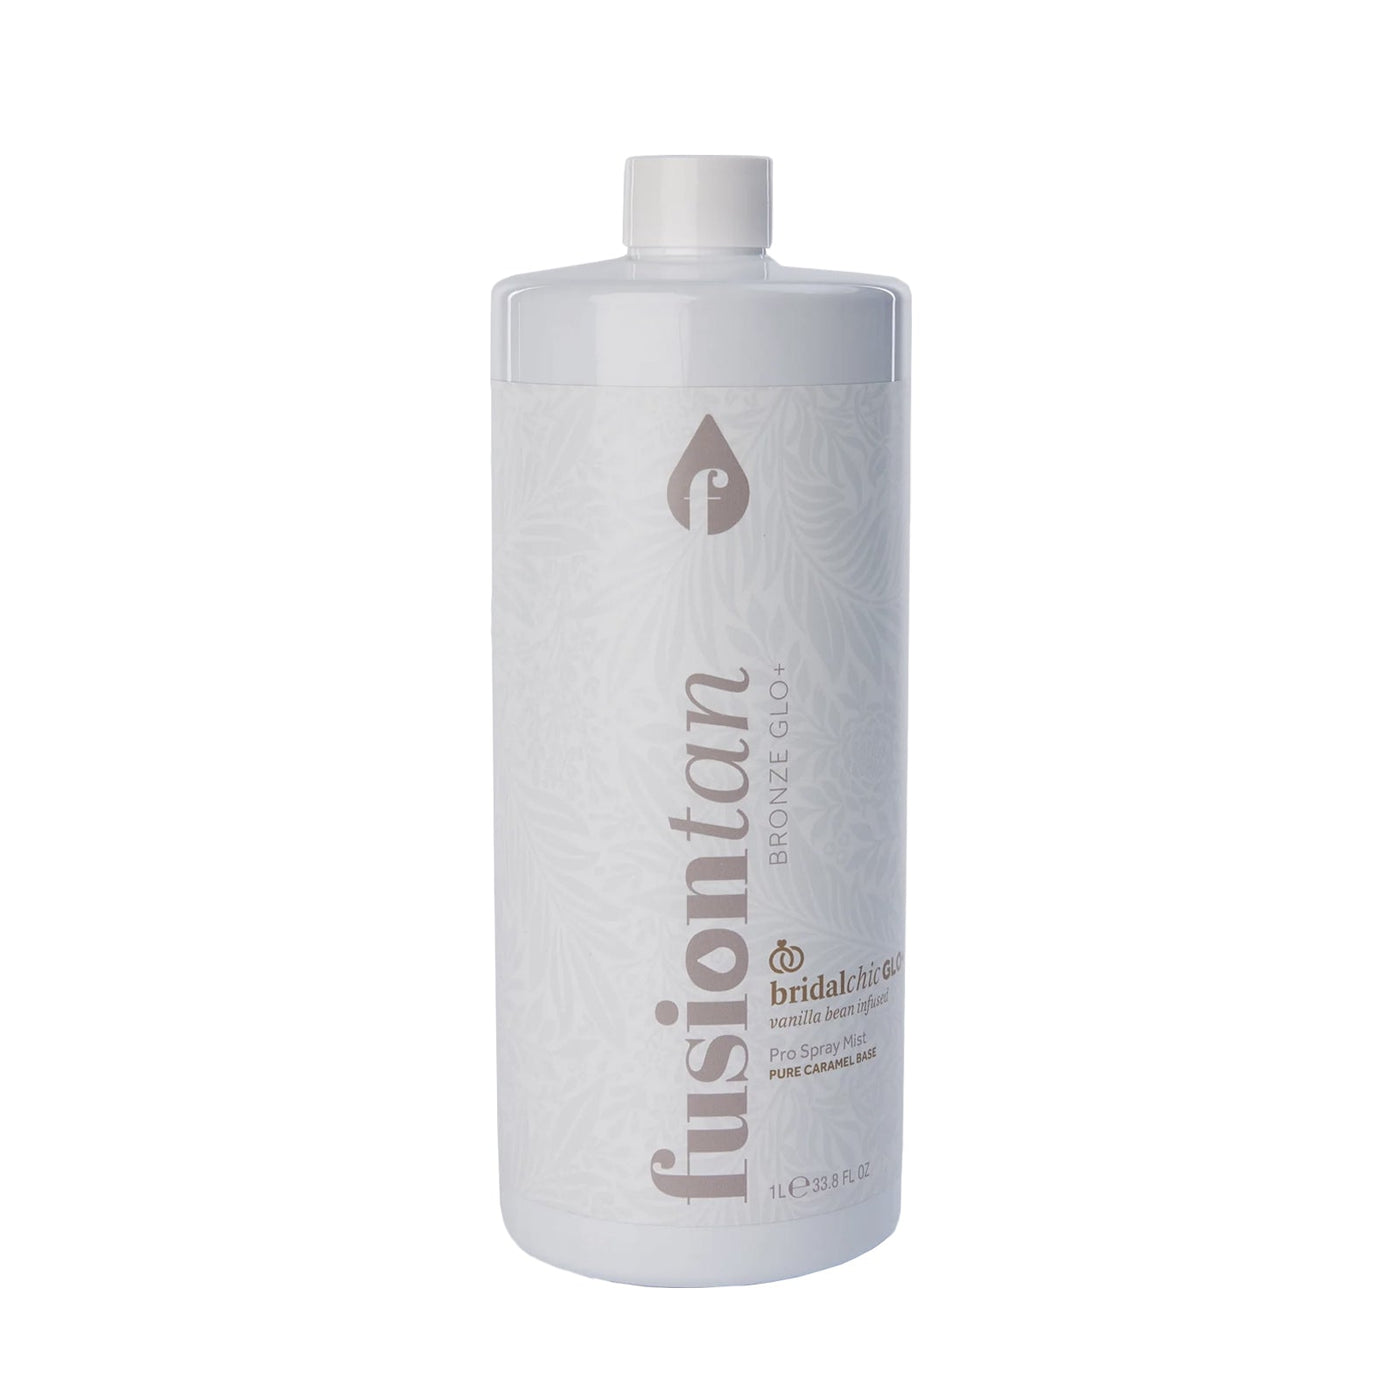 Fusion Tan Bronze BRIDALchic GLO+ Pro Spray Tan Mist